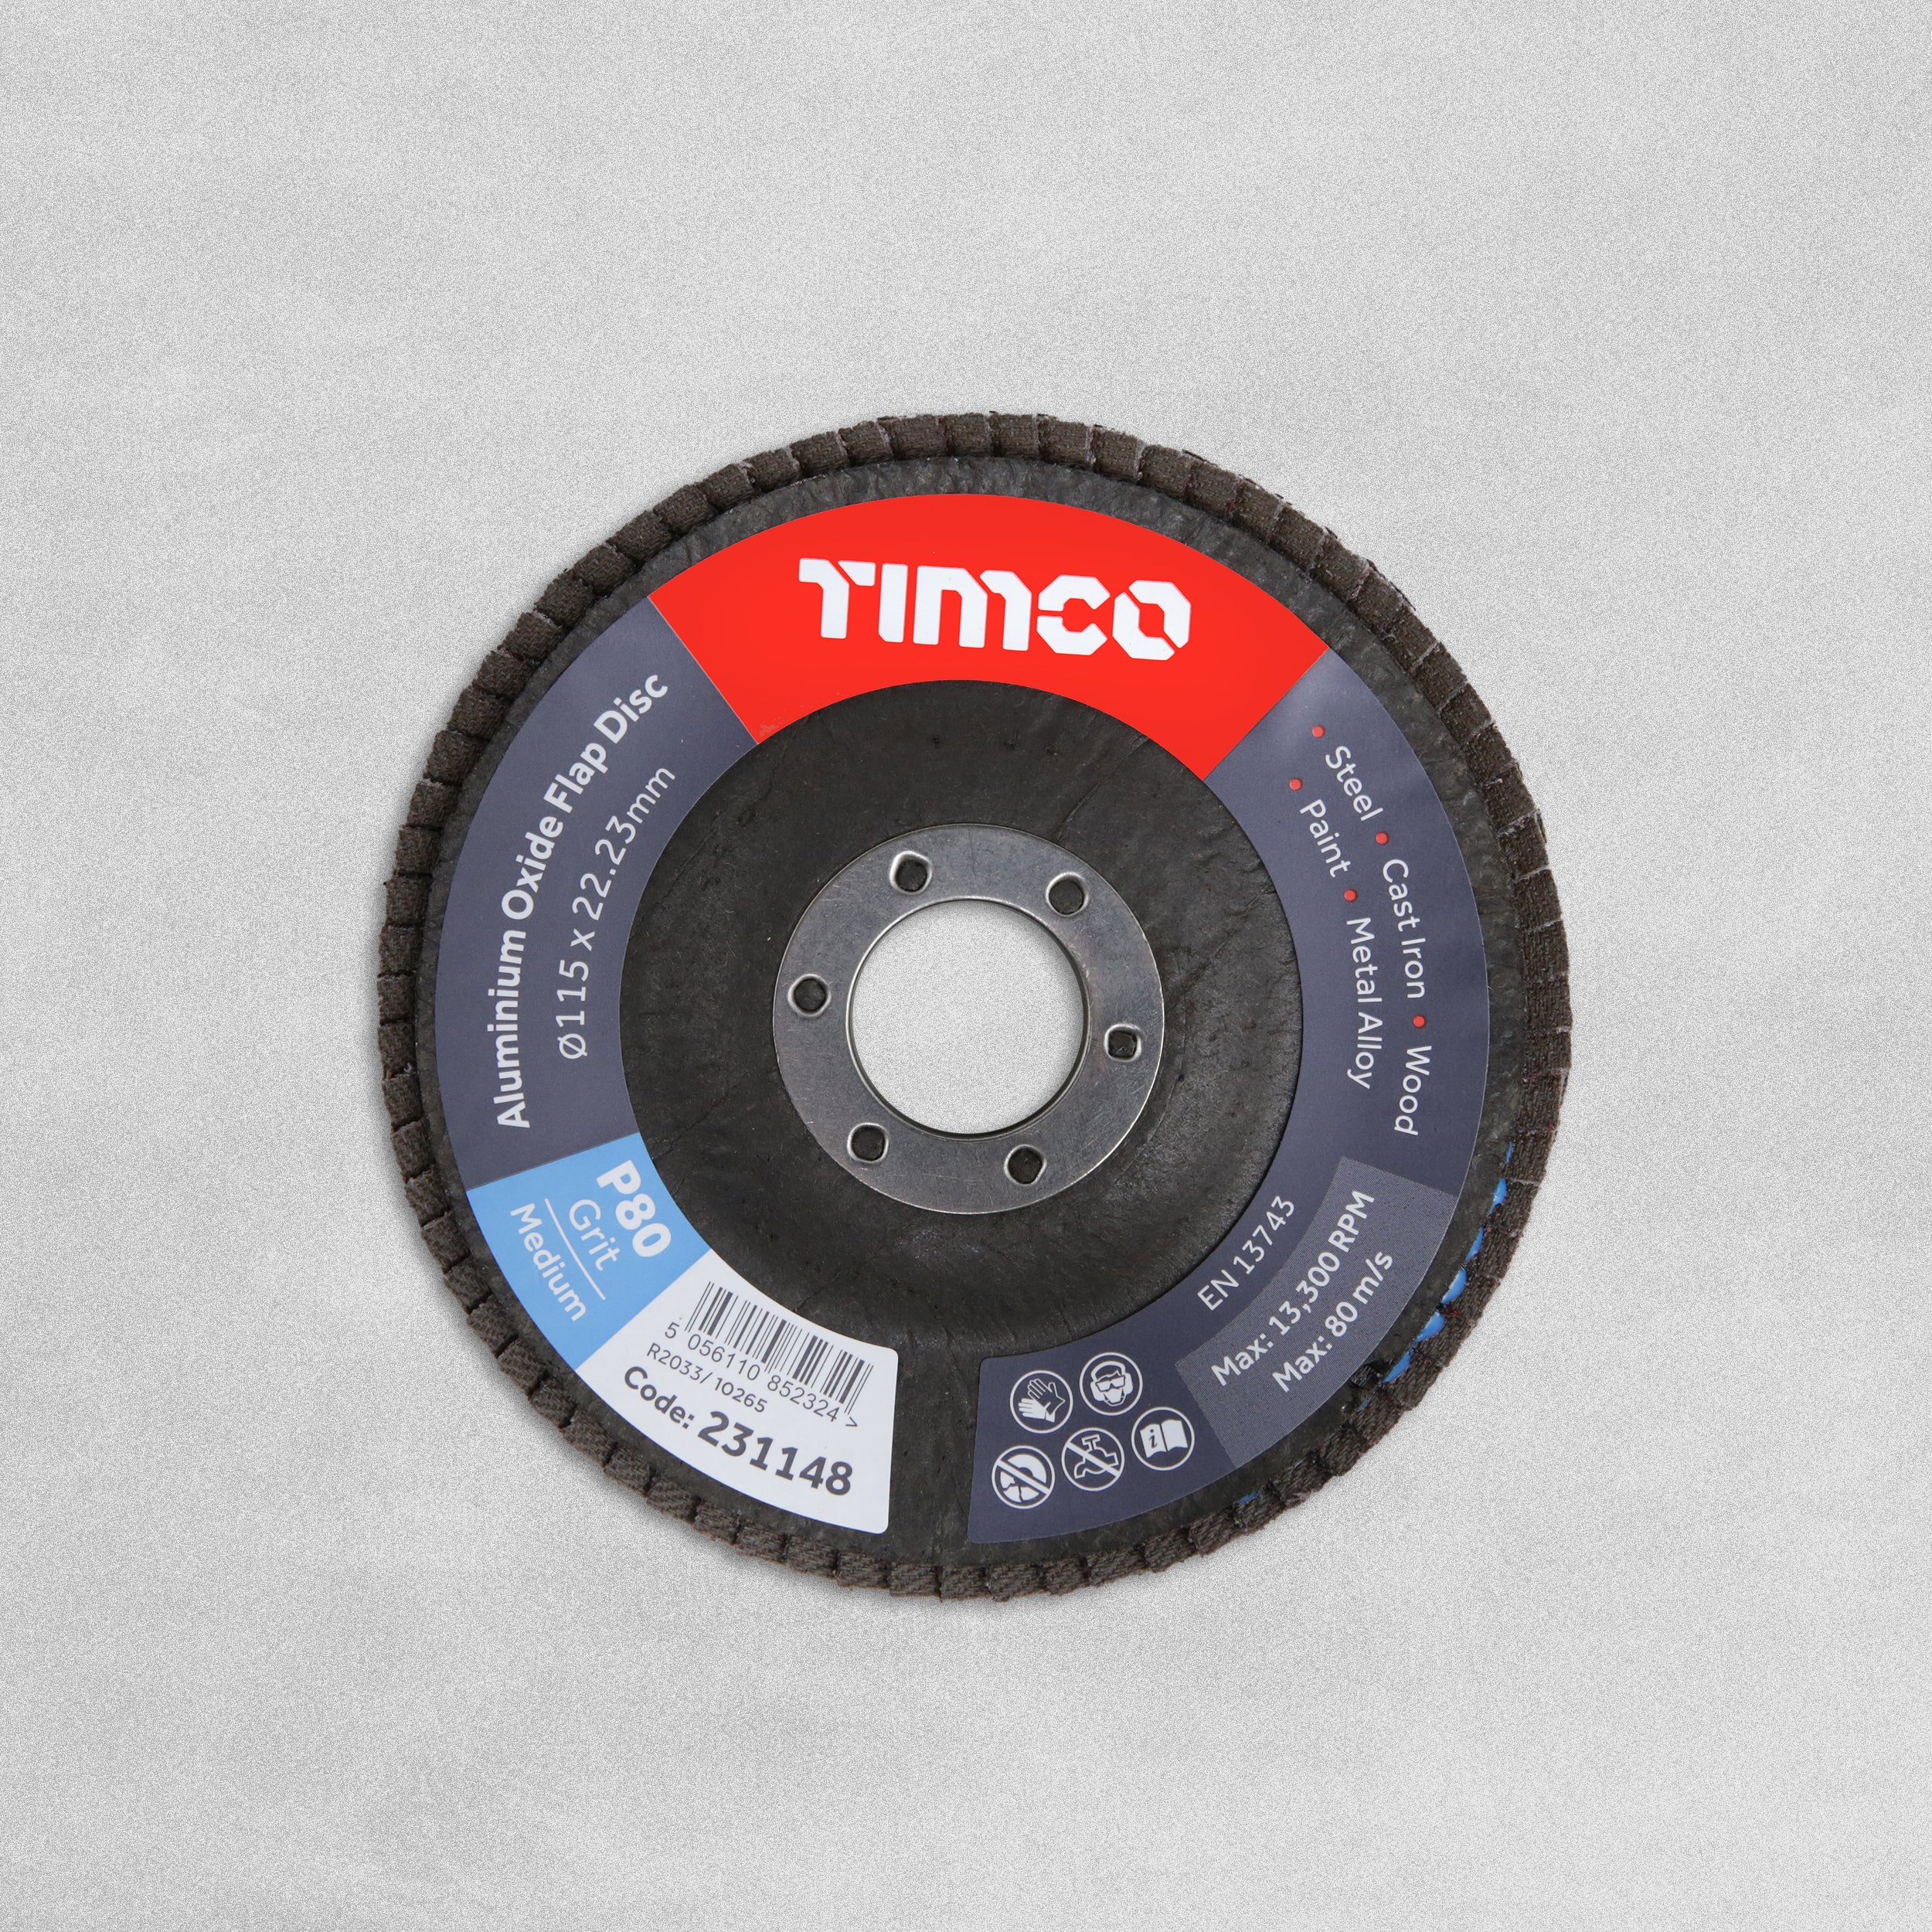 Timco Aluminium Oxide Flap Discs